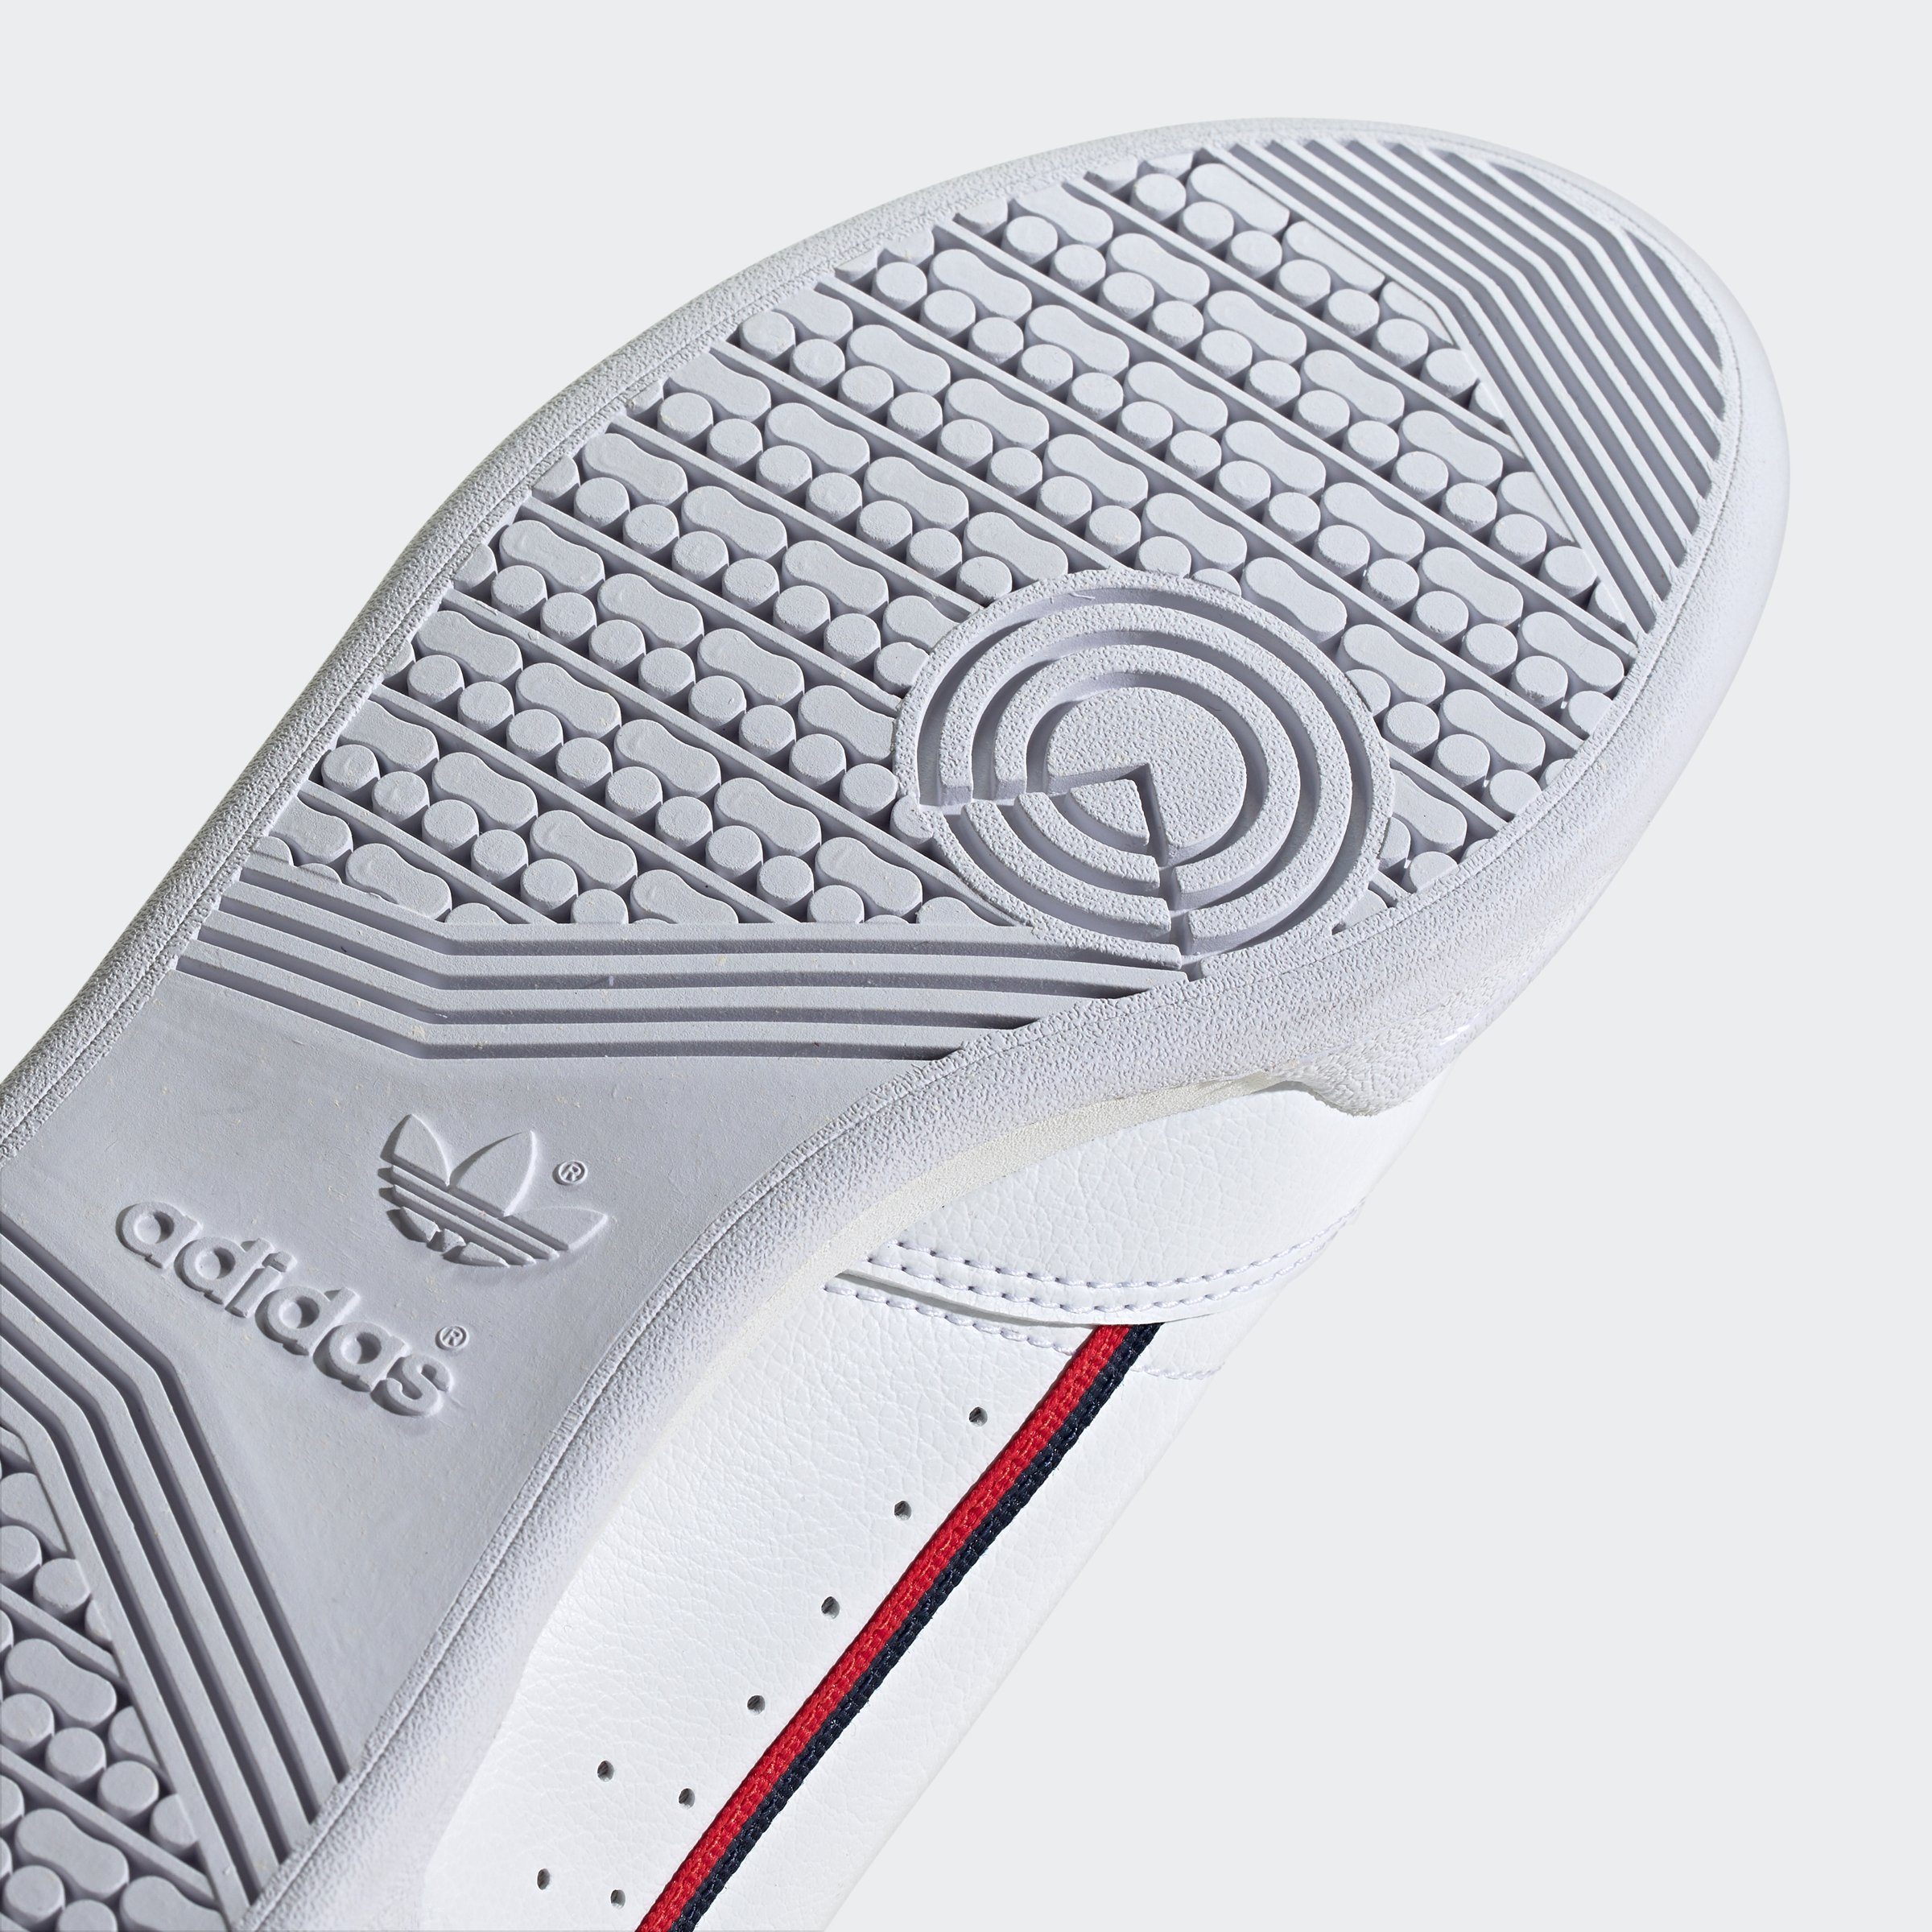 80 CONTINENTAL adidas Originals FTWWHT-CONAVY-SCARLE Sneaker VEGAN